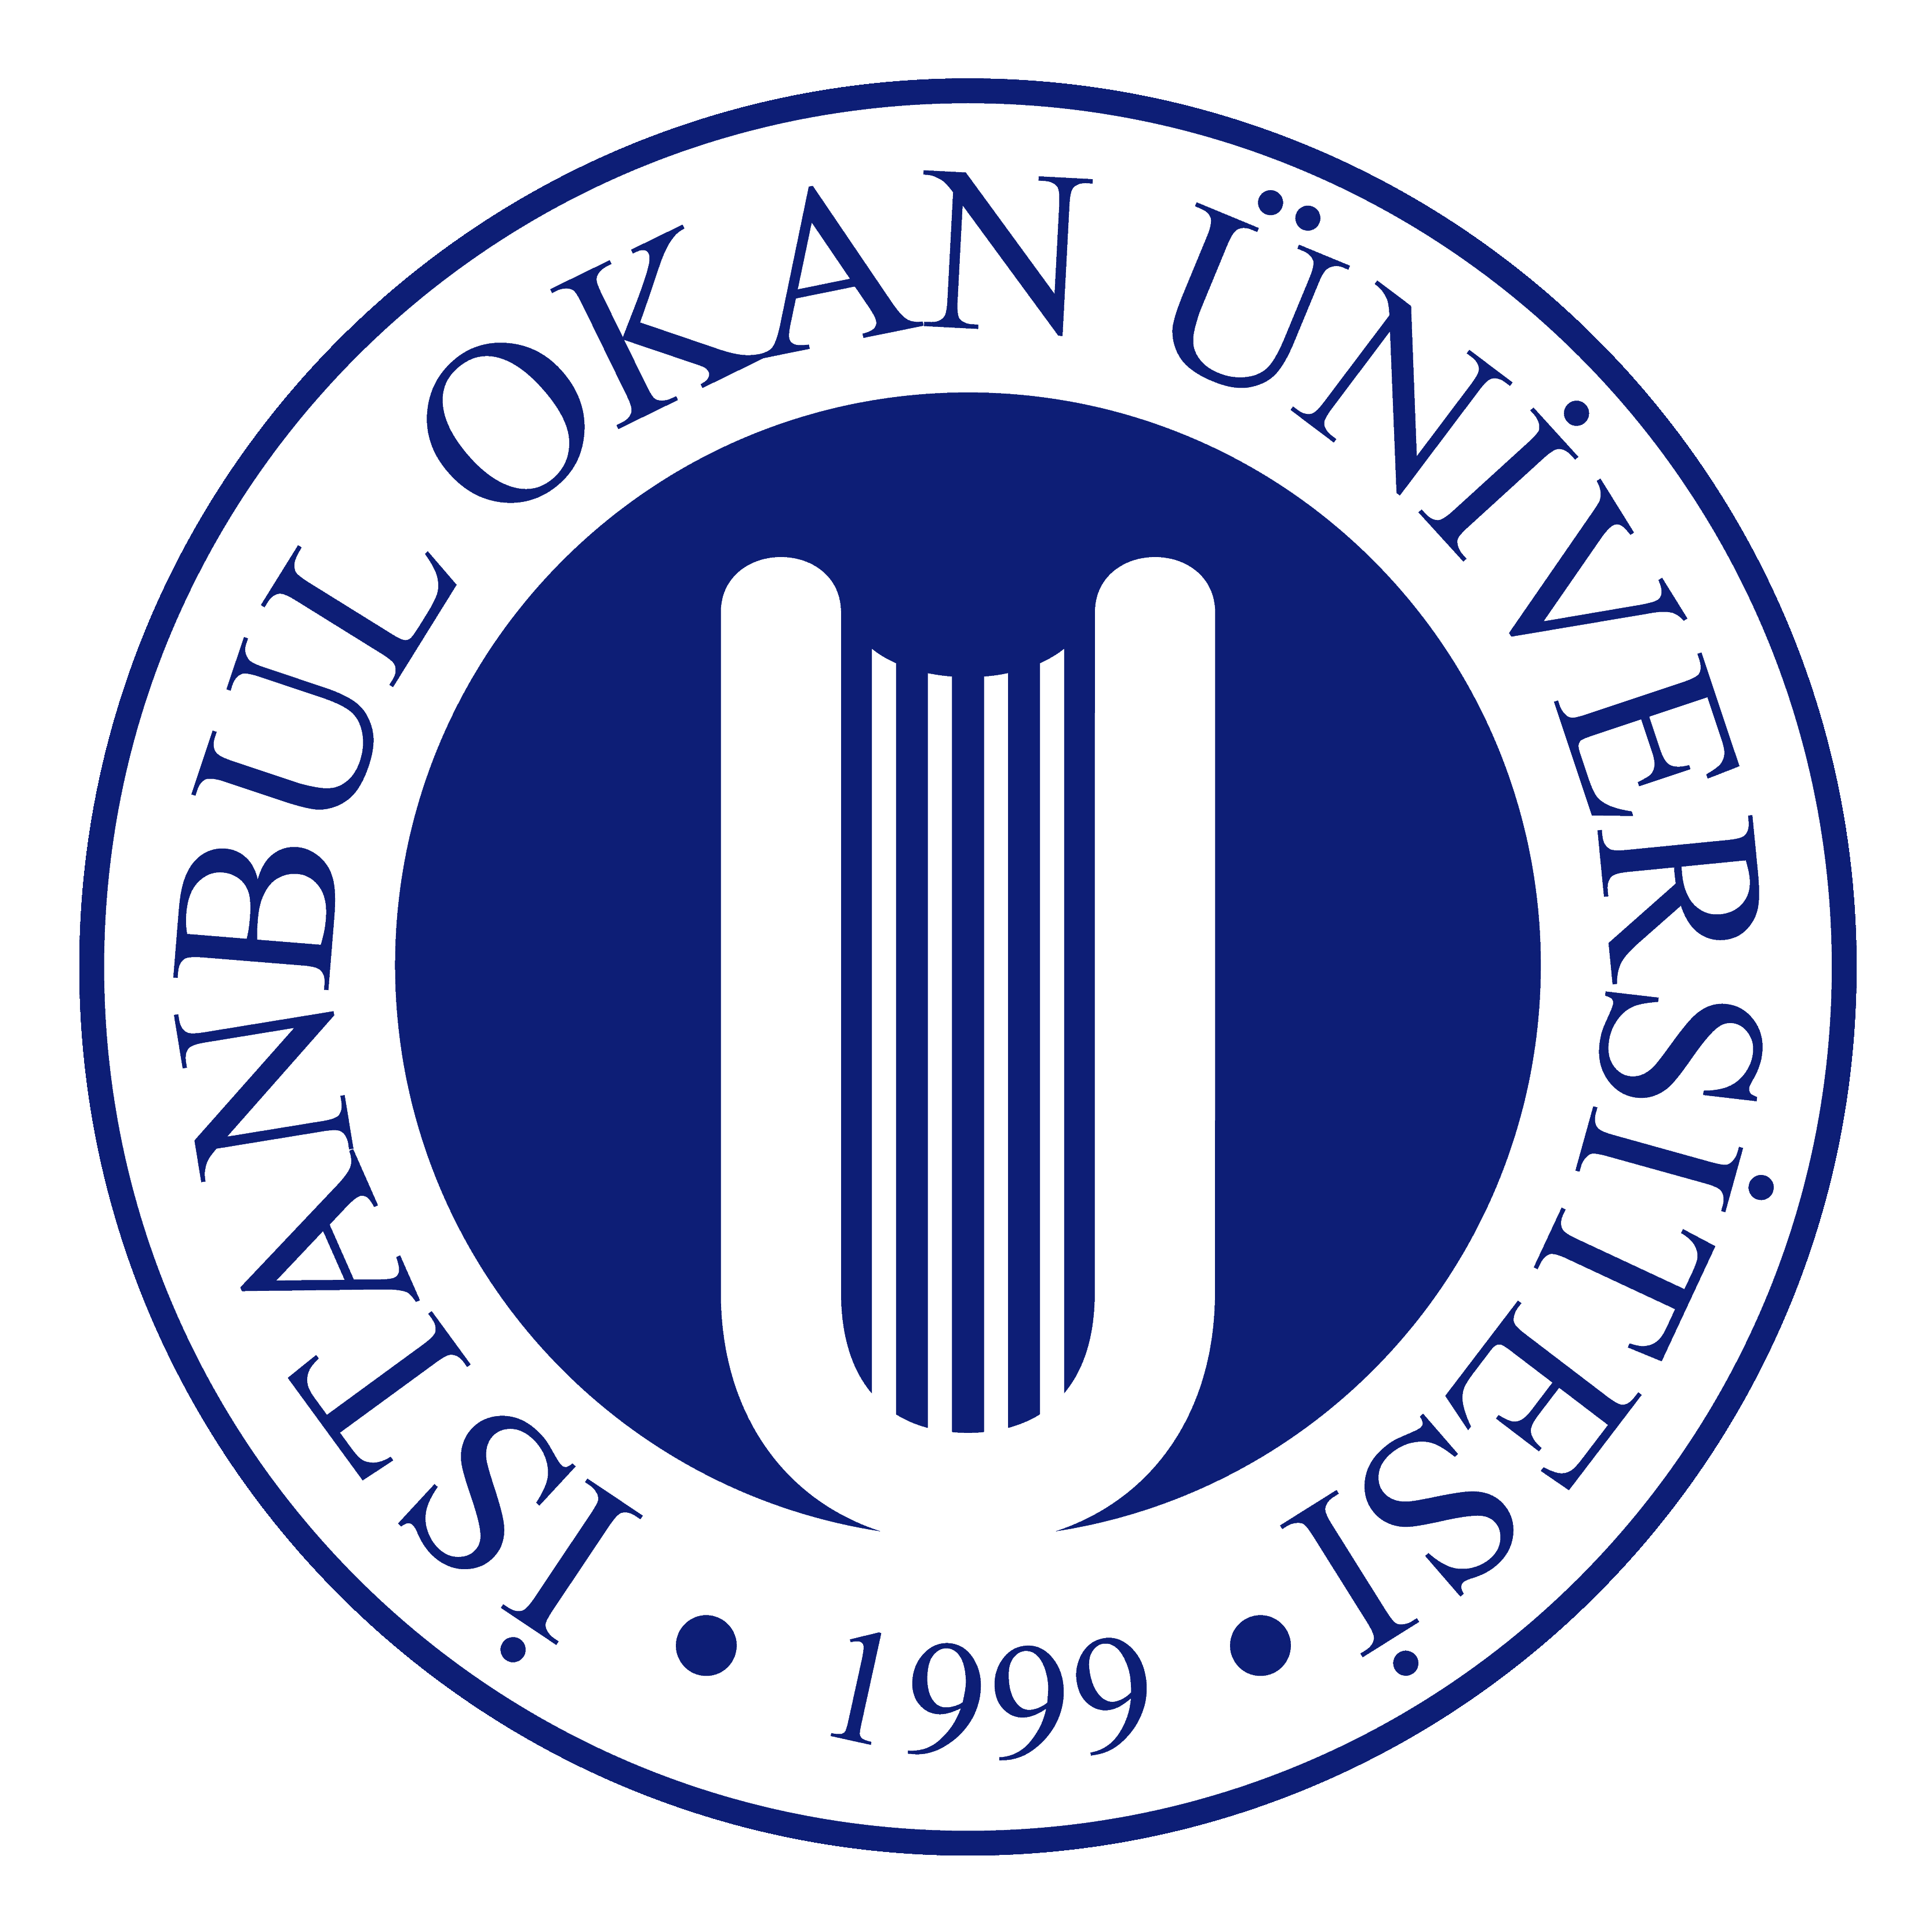 İstanbul Okan Üniversitesi Logo png